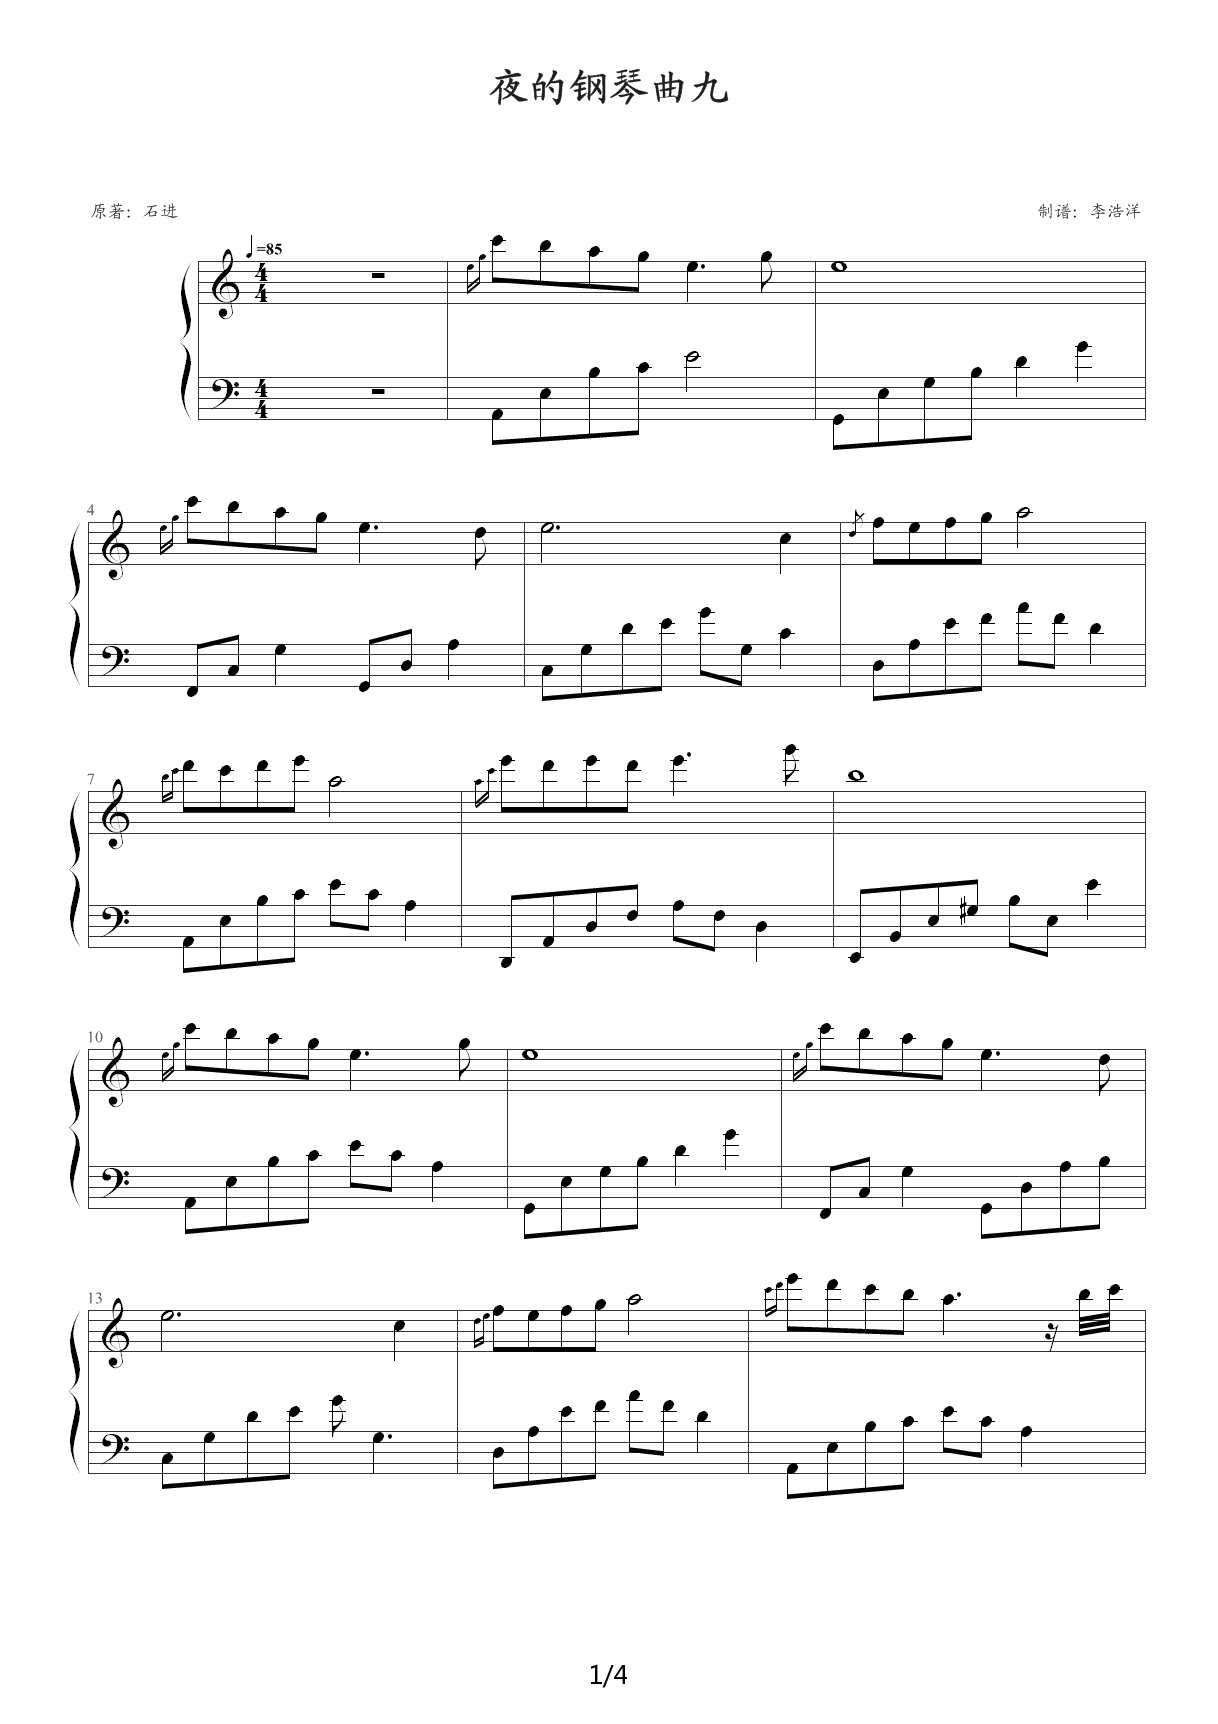 夜的钢琴曲 5-原版-钢琴谱文件（五线谱、双手简谱、数字谱、Midi、PDF）免费下载